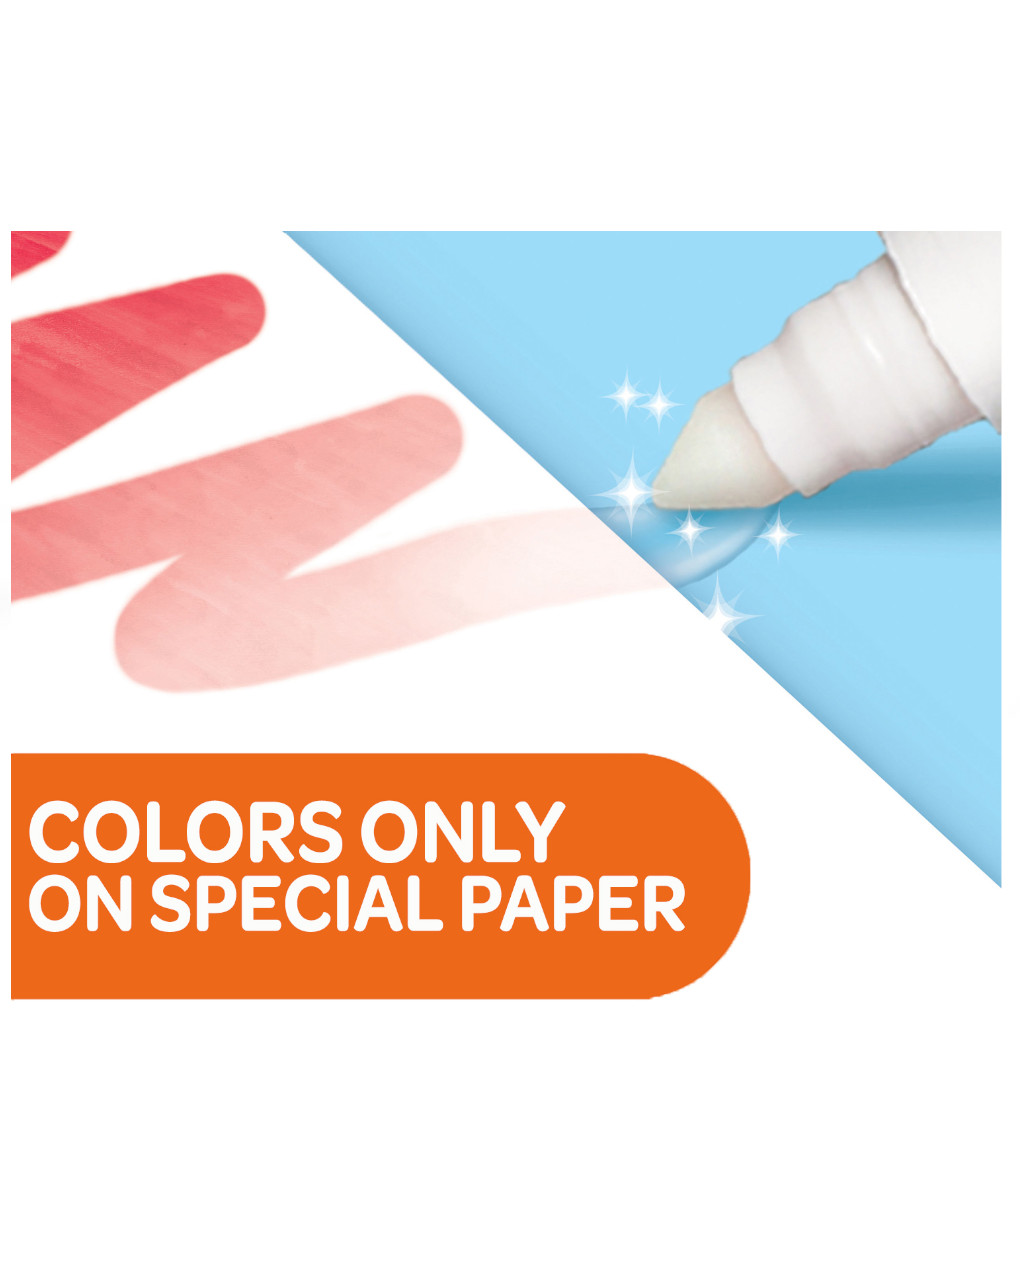 Livro para colorir com o tema dos números bluey - crayola - Crayola